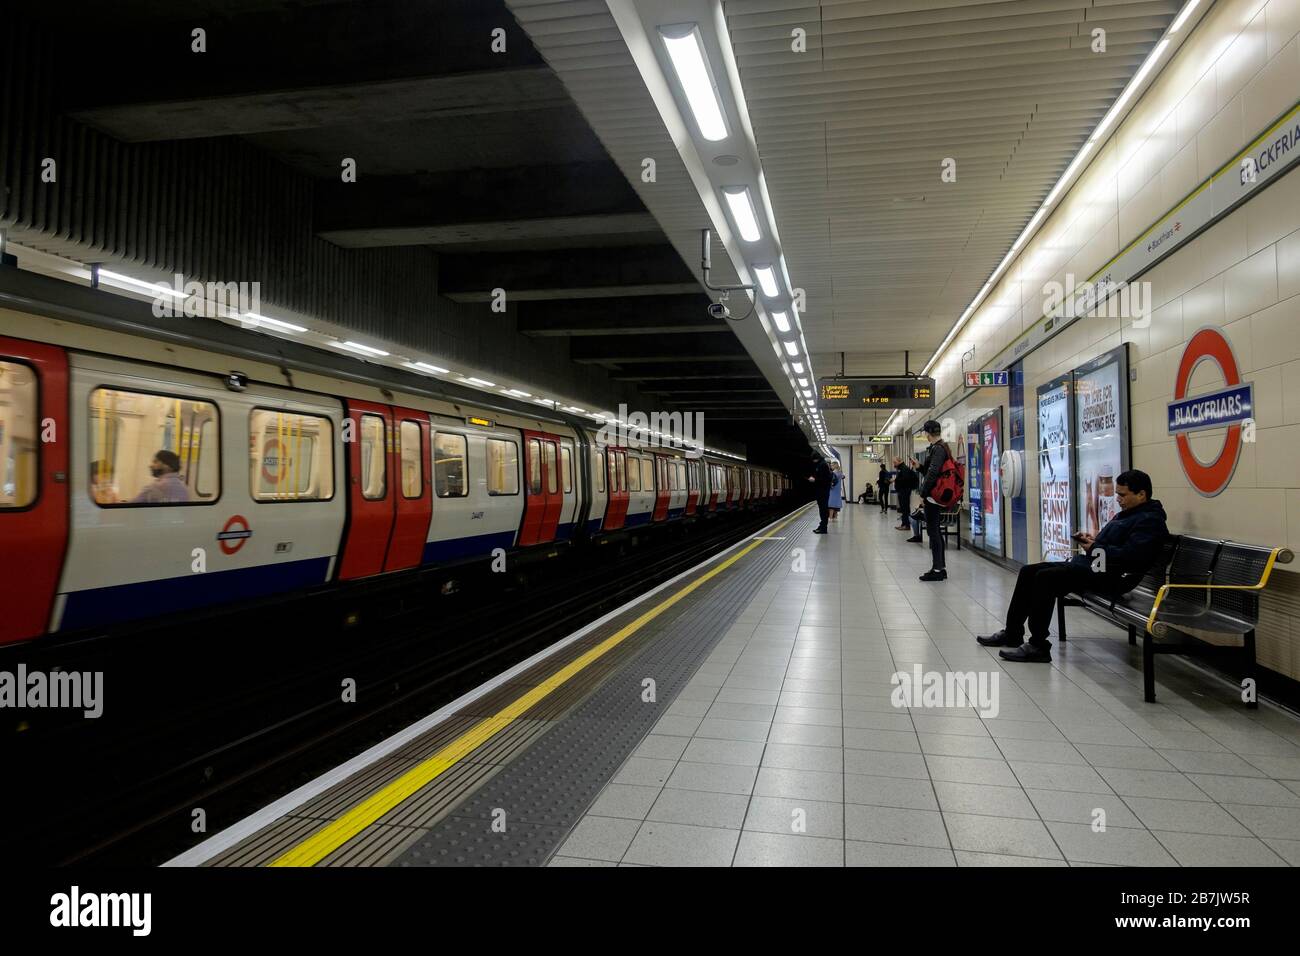 Londres, Reino Unido. 16 de marzo de 2020.el número de pasajeros en el metro de Londres ha disminuido durante el brote de coronavirus, informó Transport for London (TfL). A partir del 2 de marzo, el número de personas que utilizan el tubo disminuyó un 19% en comparación con la misma semana de 2019. Los datos también mostraron una caída del 10% en los pasajeros de autobuses de Londres. Foto de stock